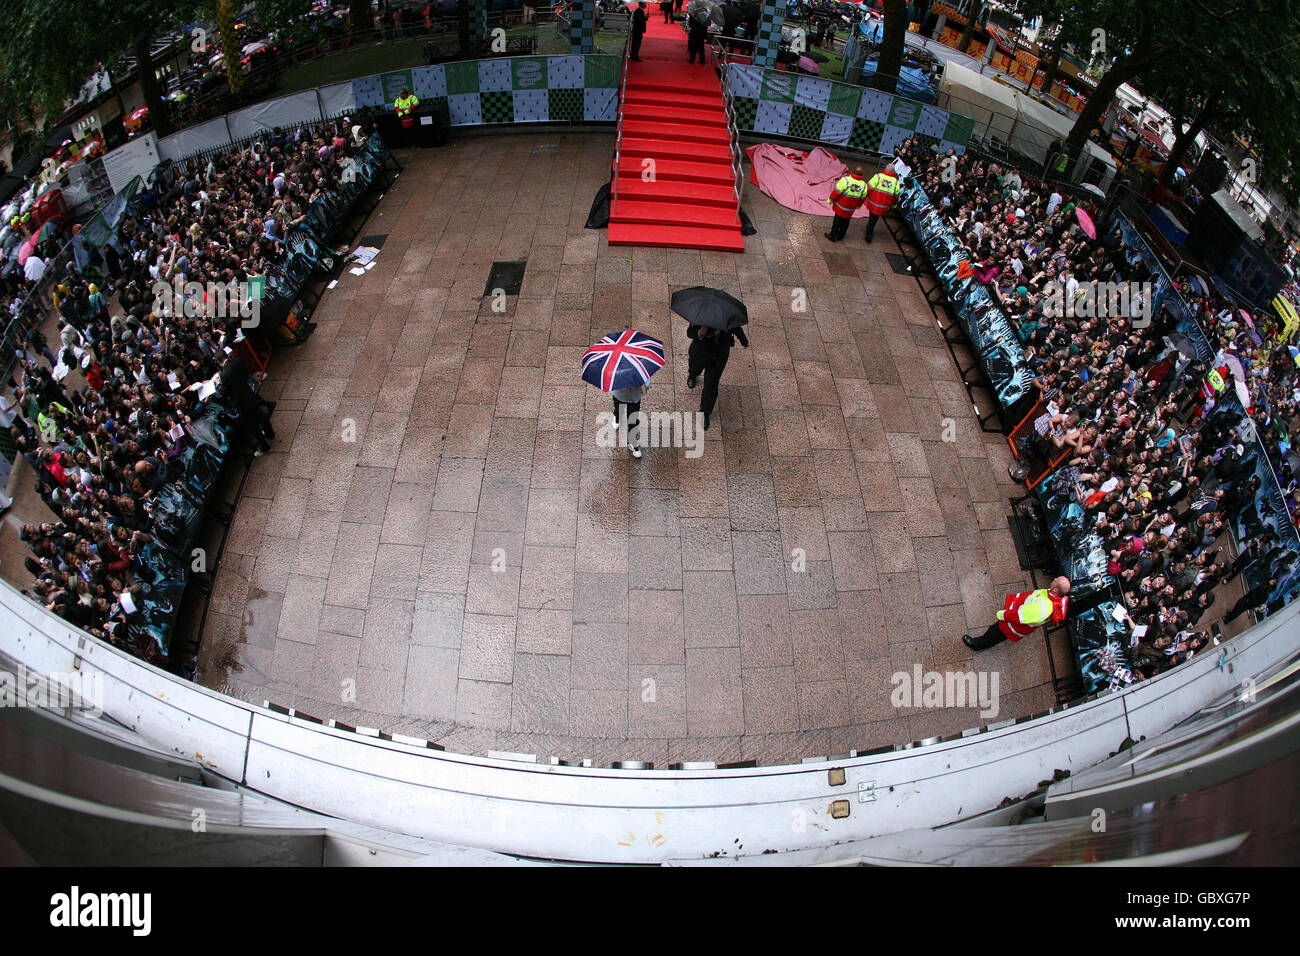 La folla durante la pioggia pesante alla prima mondiale di Harry Potter e il Principe Mezzosangue all'Odeon Leicester Square, Londra. Foto Stock